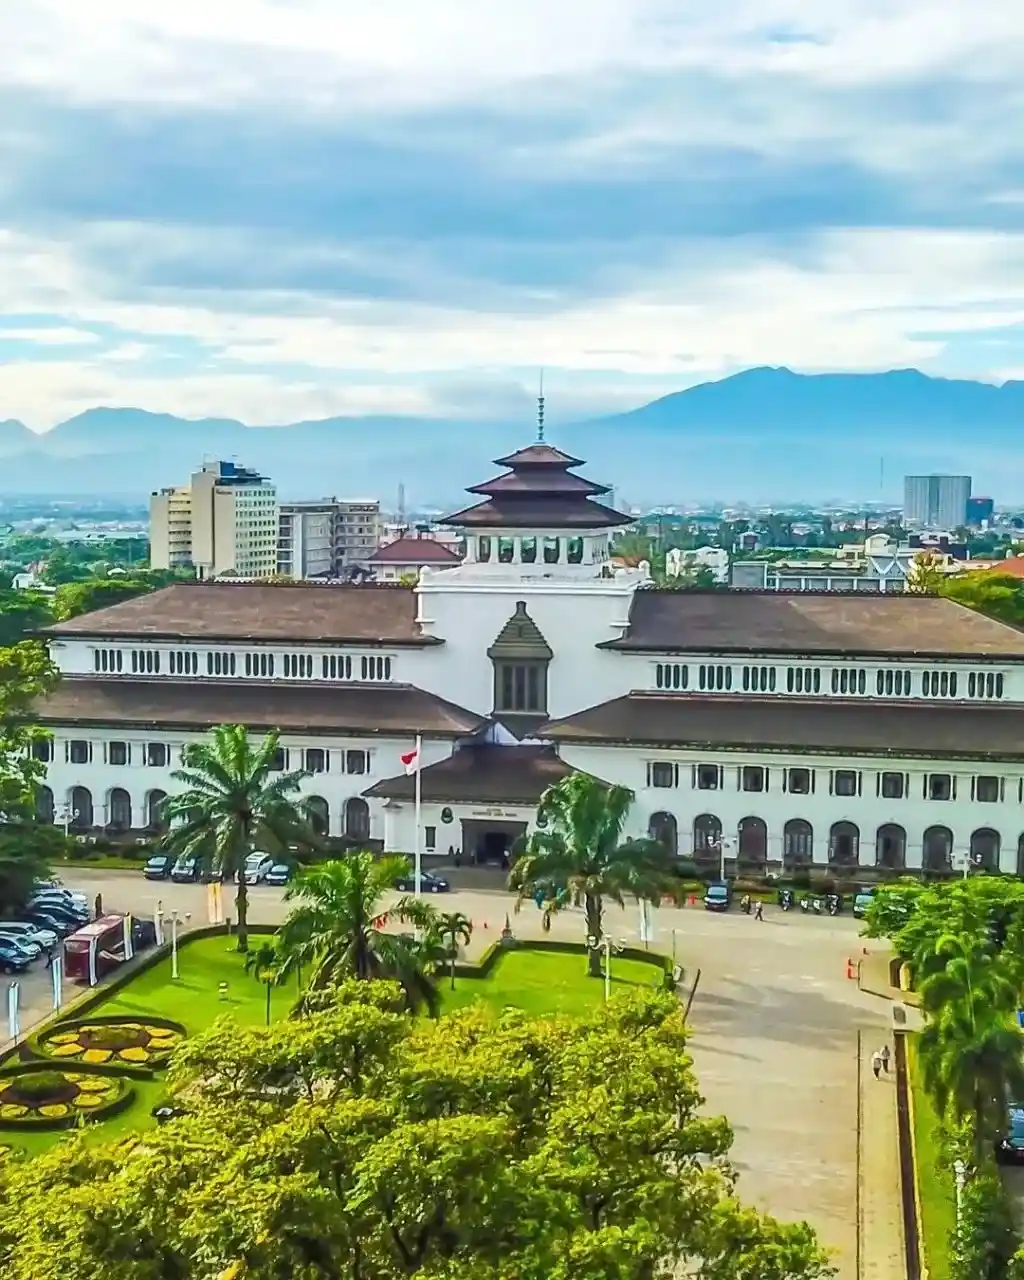 Mengenal Sejarah Kota Bandung! Lekat dengan Sosok Daendels